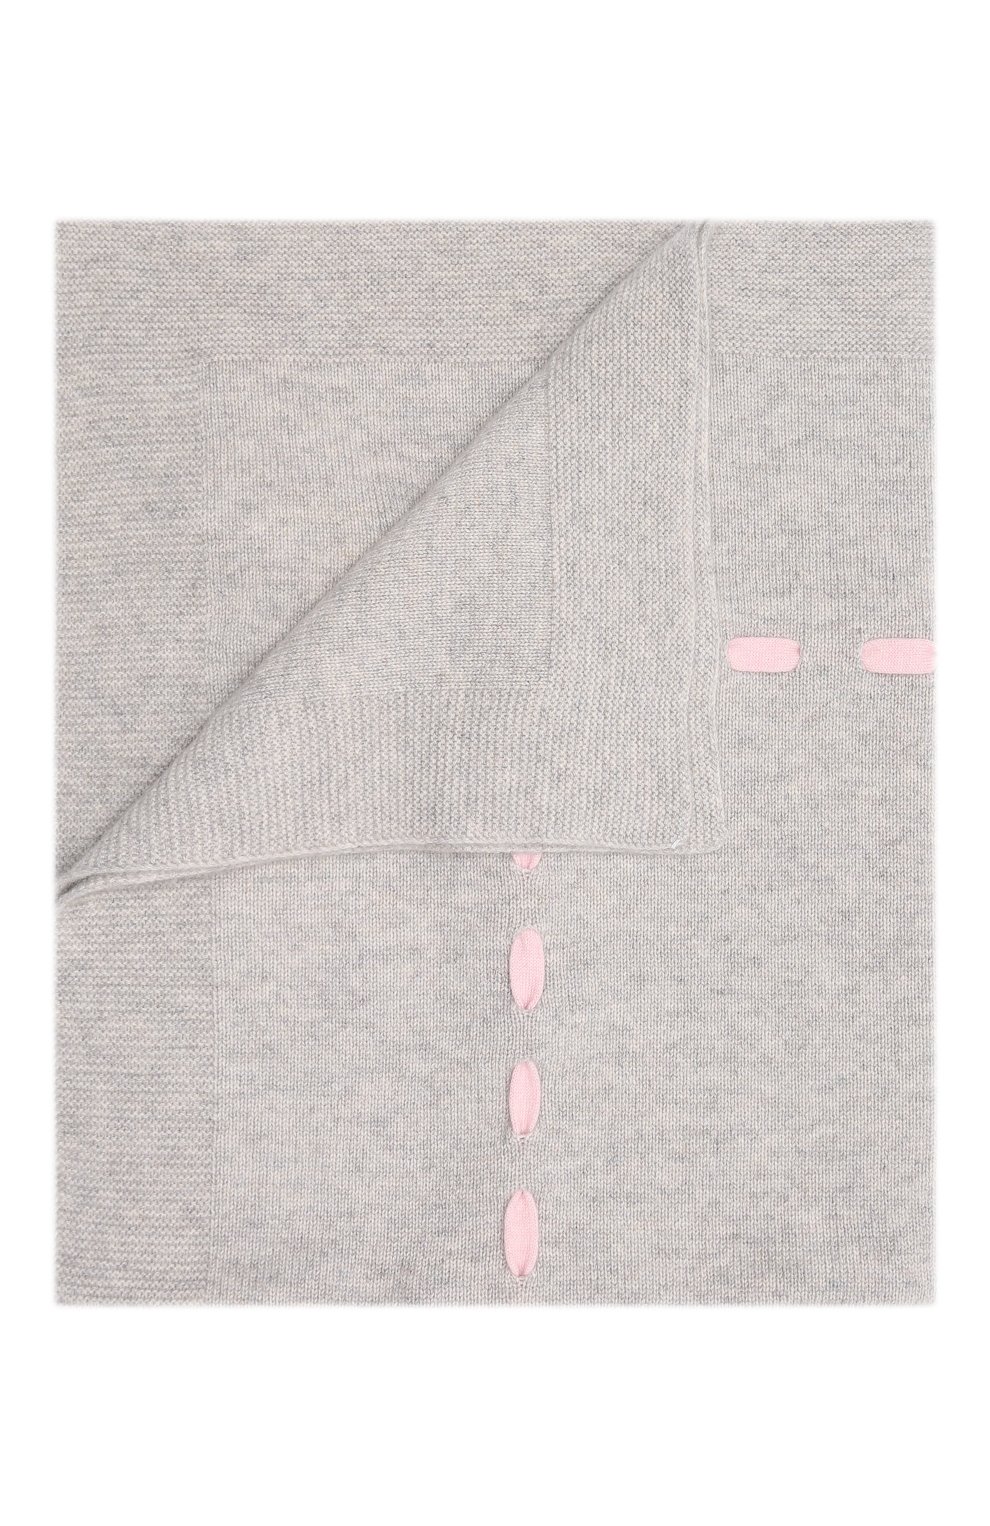 Детского кашемировое одеяло BABY T серого цвета, арт. 21AIC872C0 | Фото 1 (Материал: Текстиль, Кашемир, Шерсть)